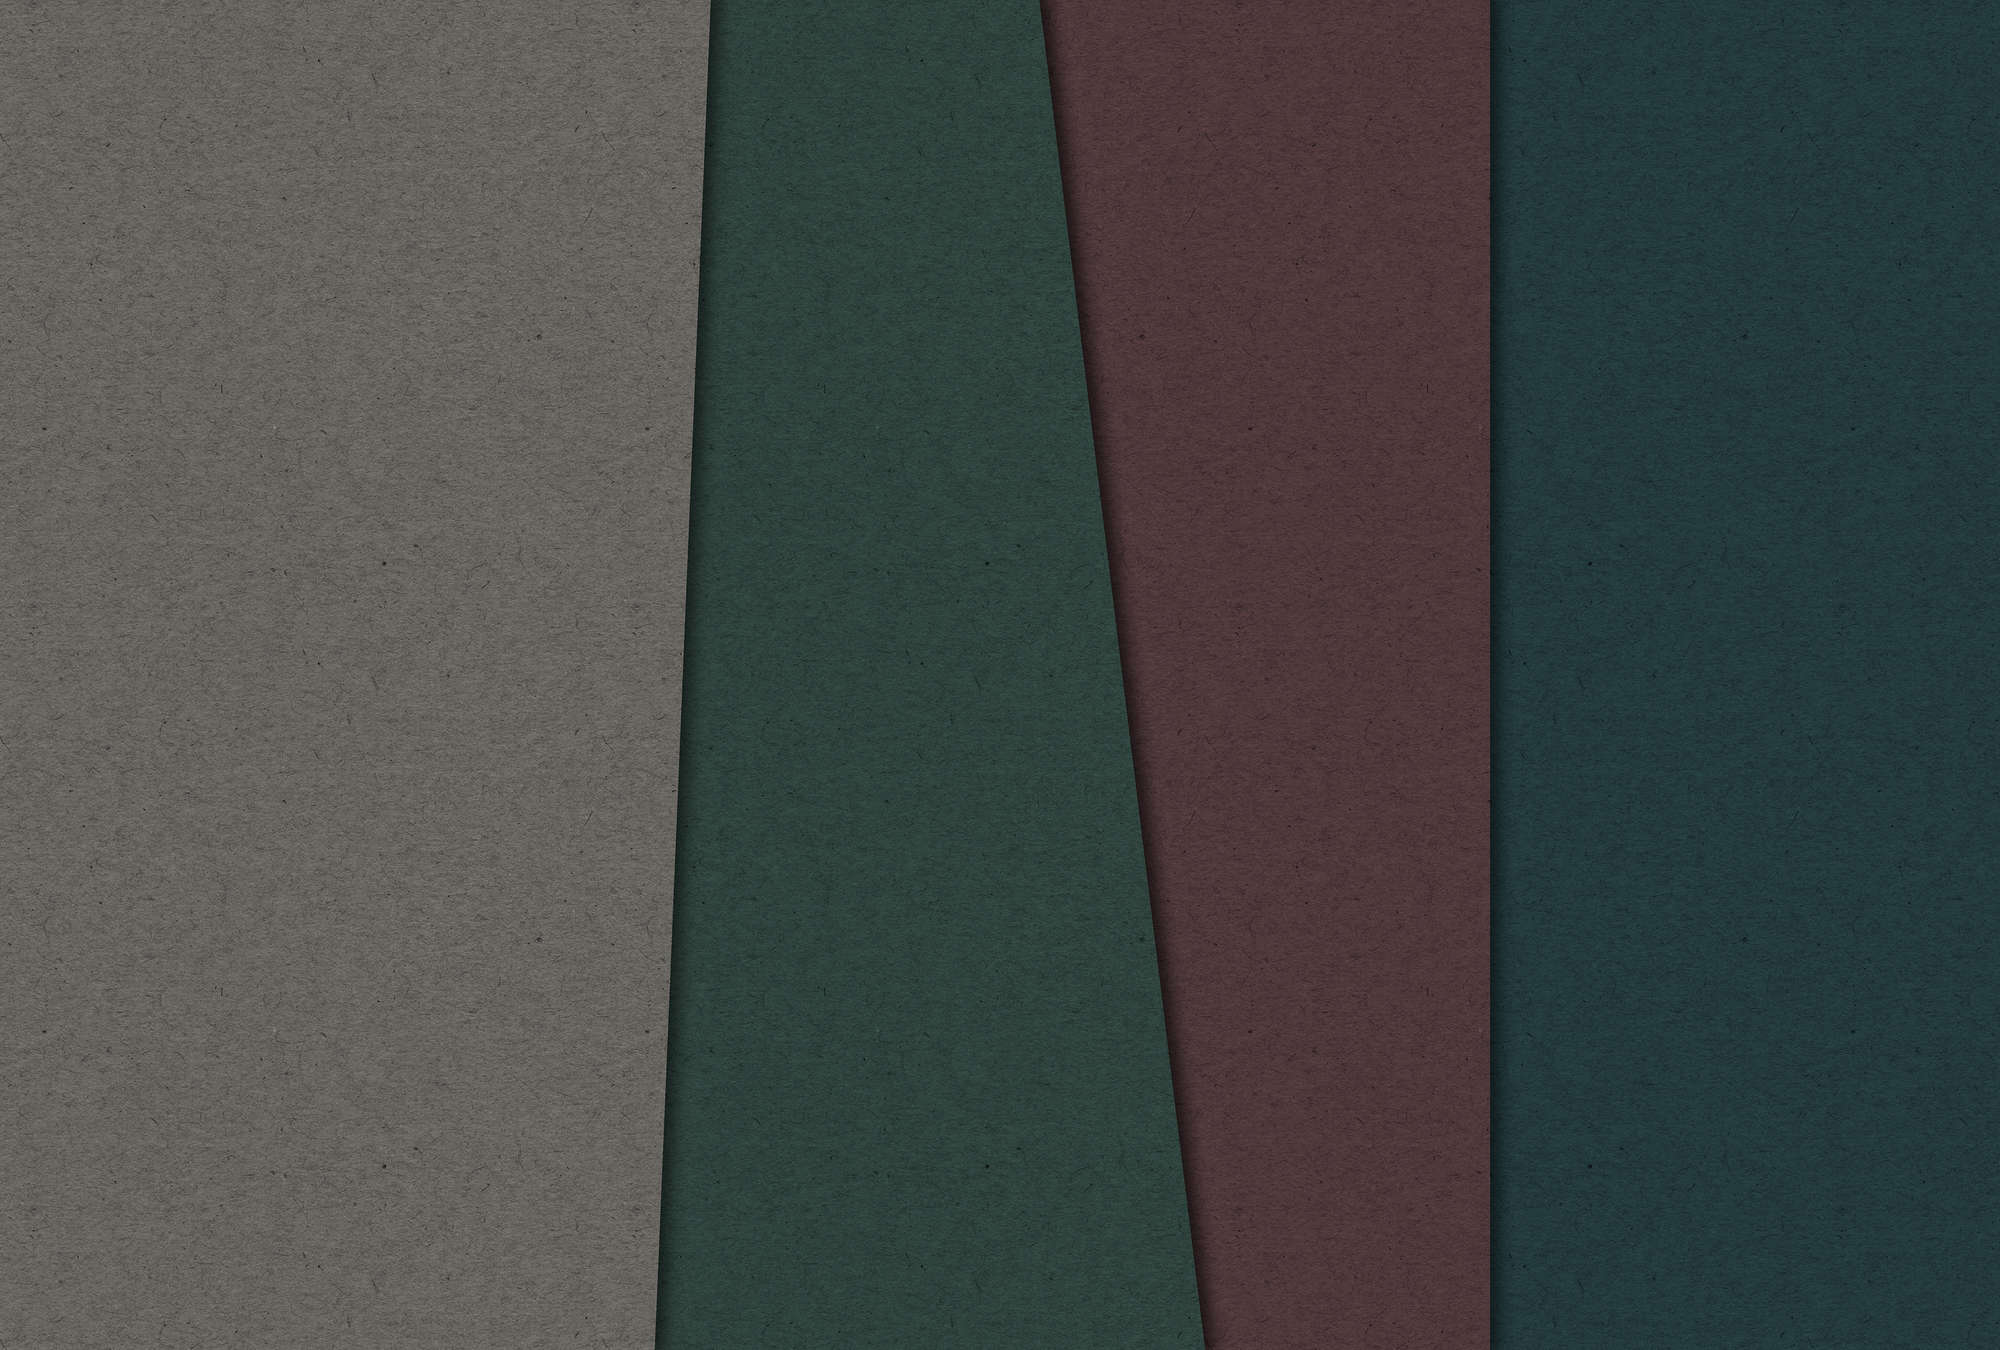             Cartone stratificato 1 - Fotomurali con aree di colore scuro nella struttura di cartone - Marrone, Verde | Vello liscio opaco
        